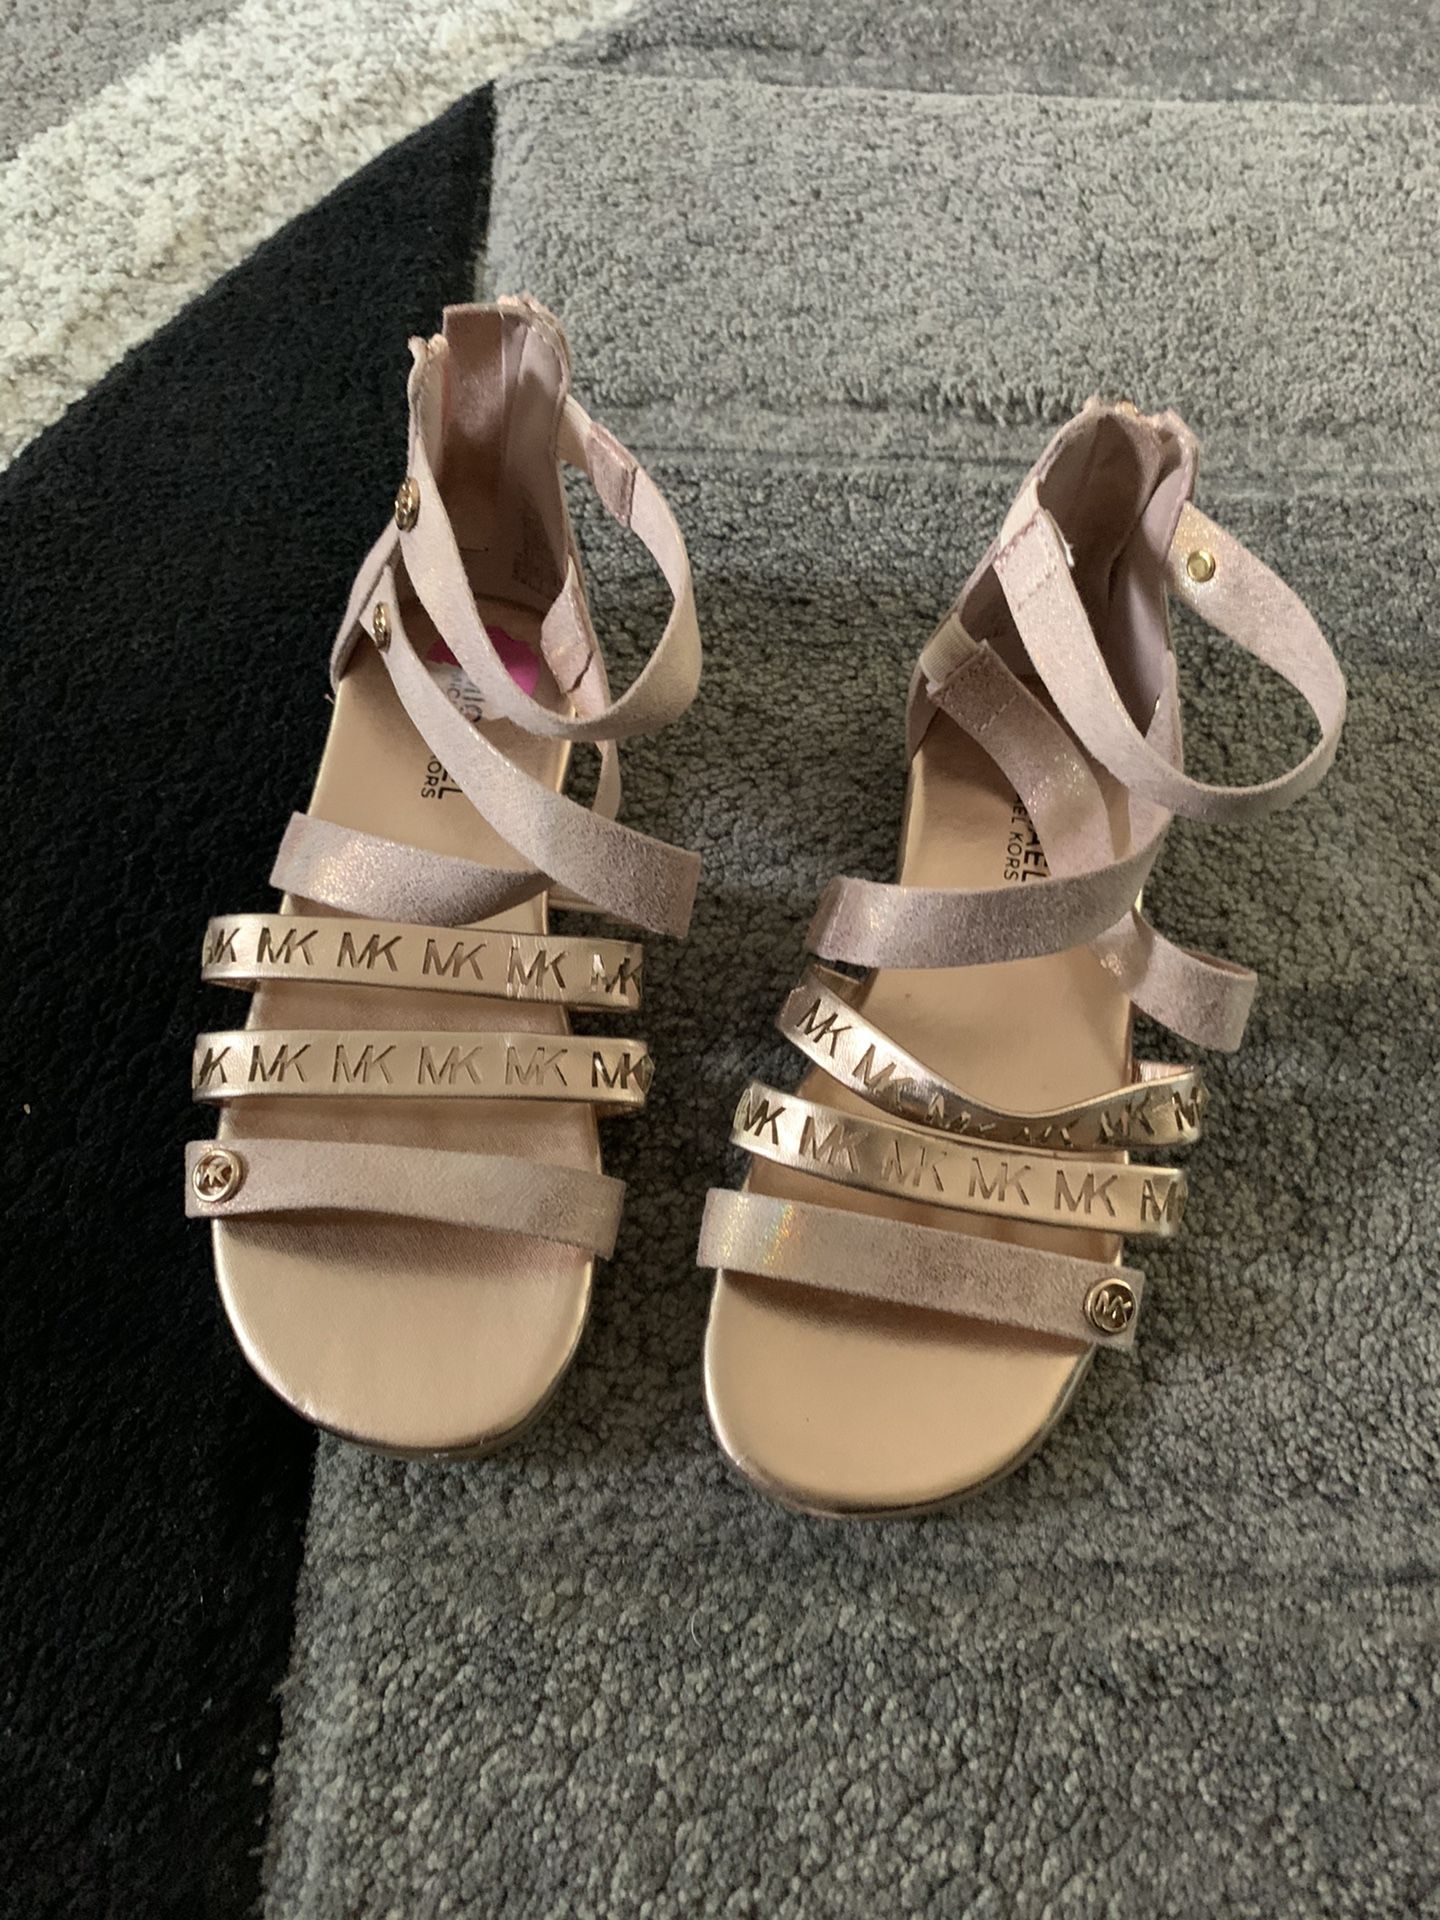 Michael kors sandal for girls size 11